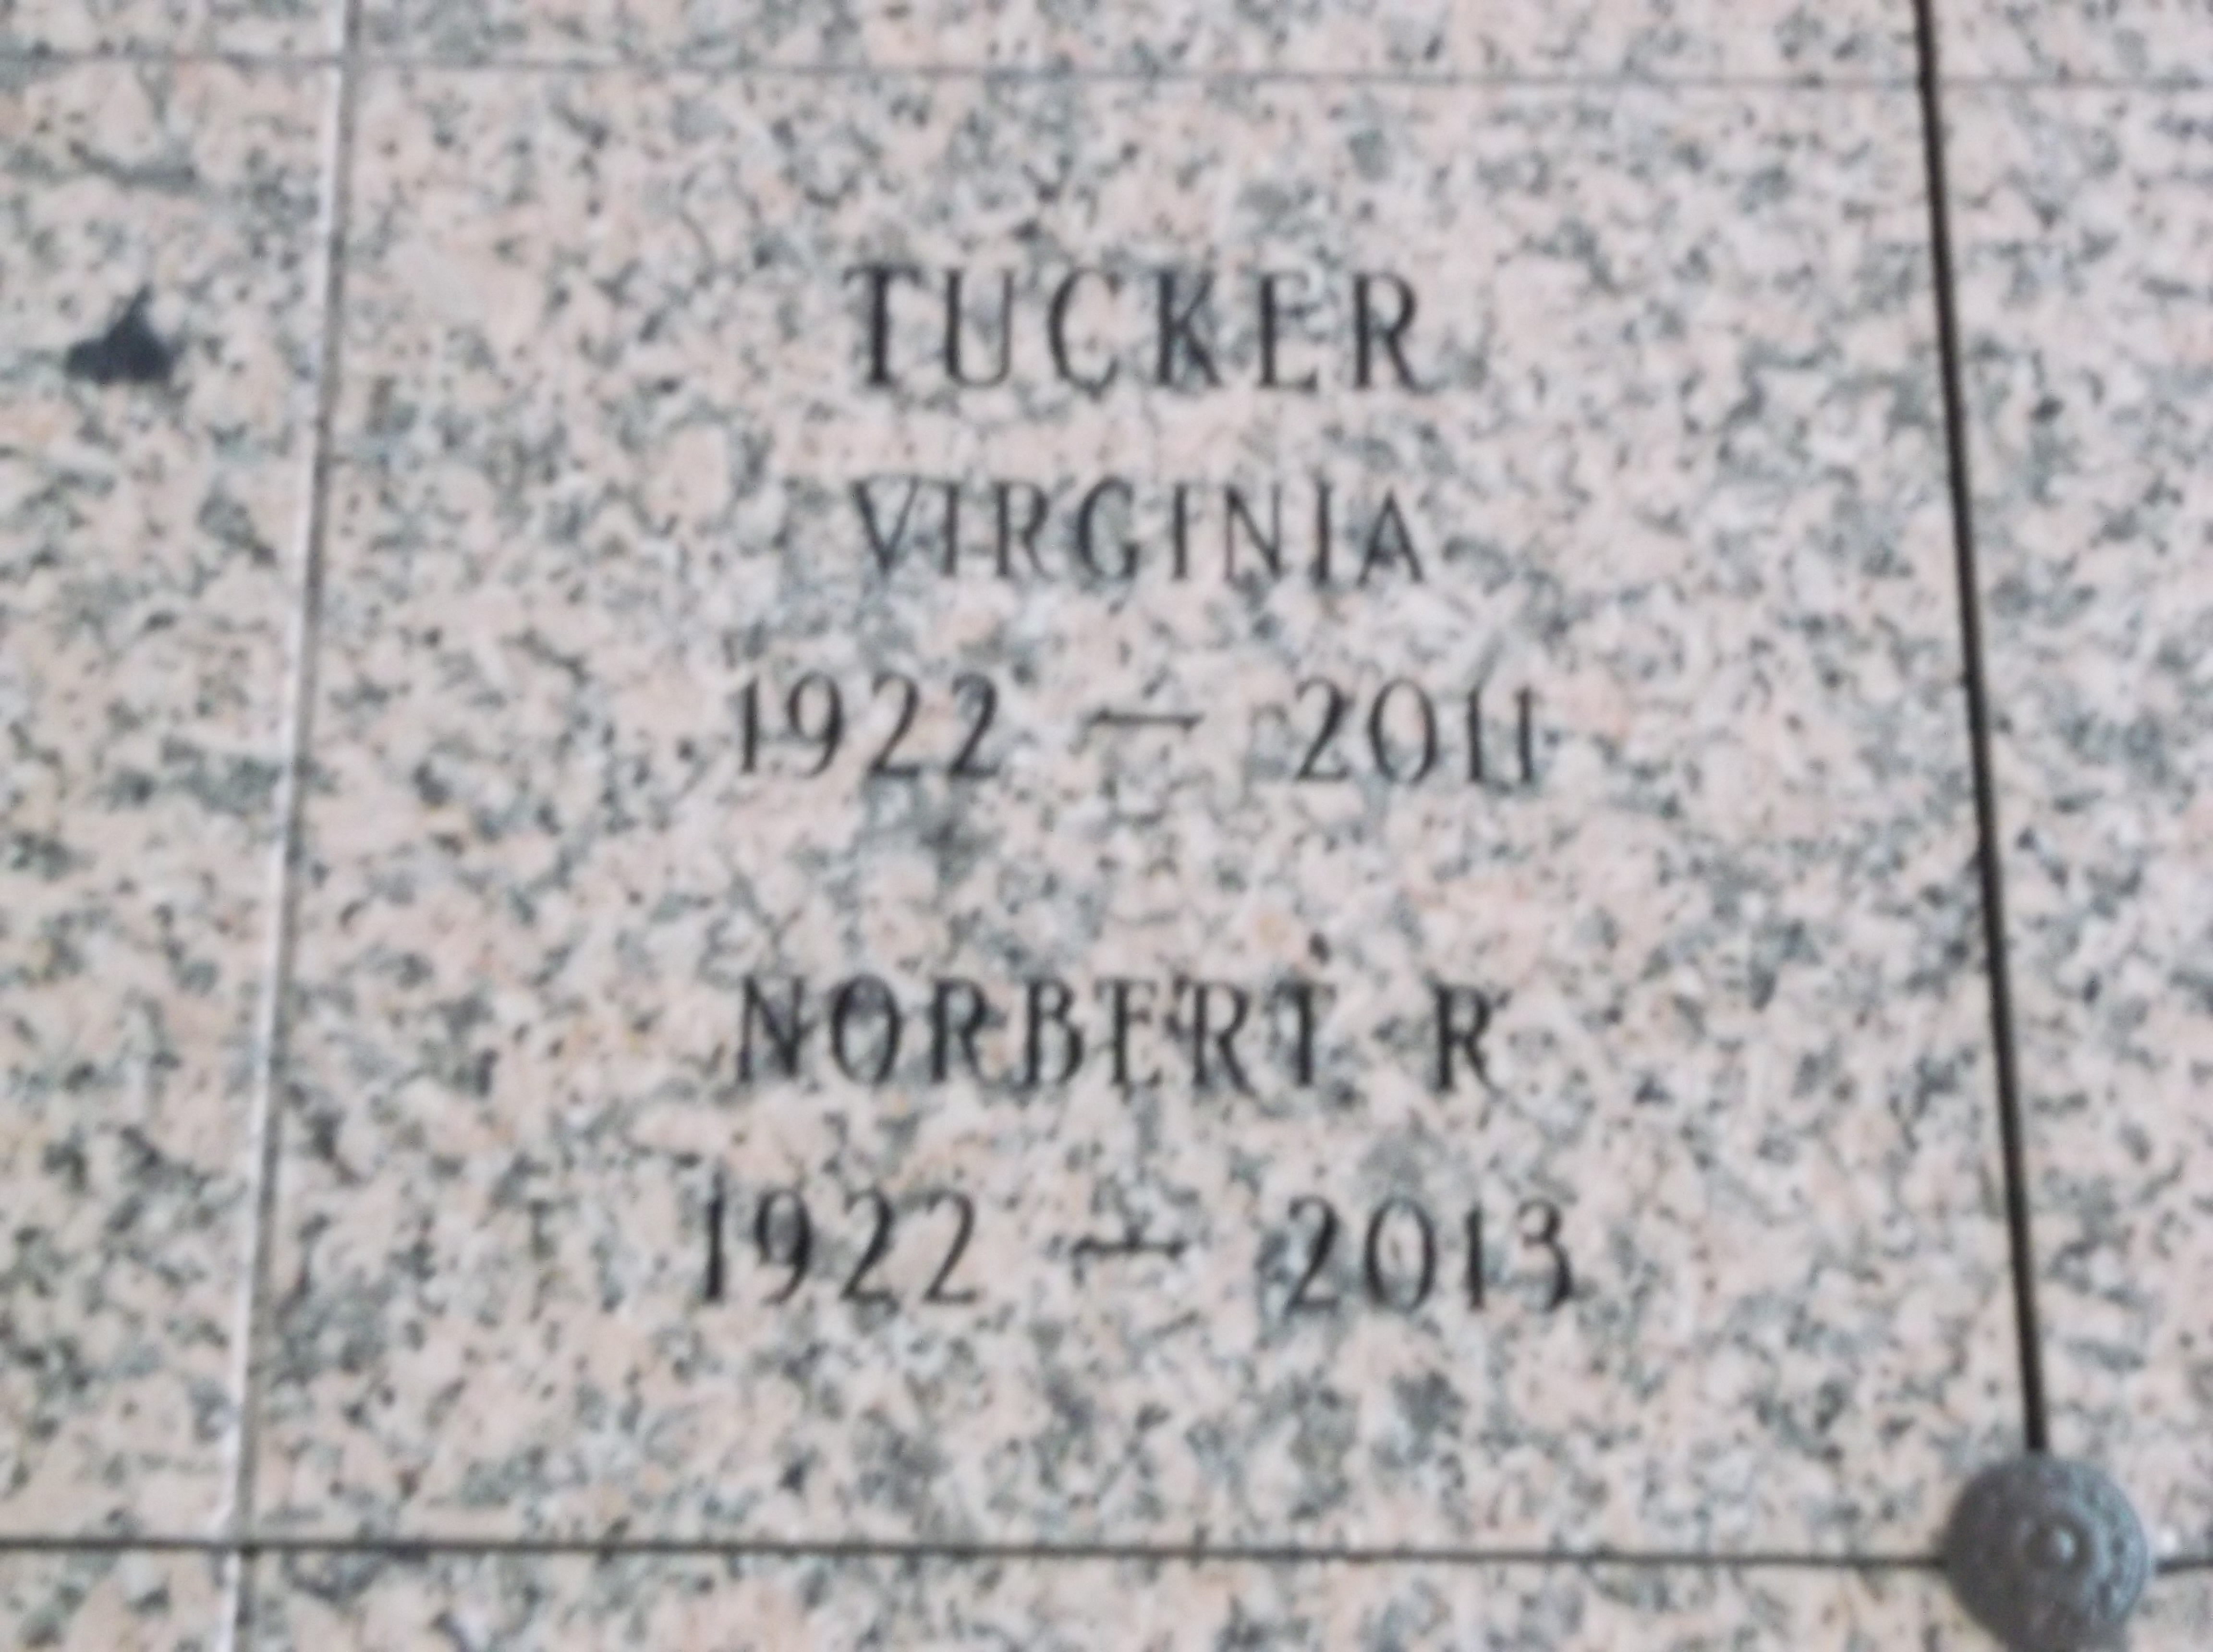 Norbert R Tucker